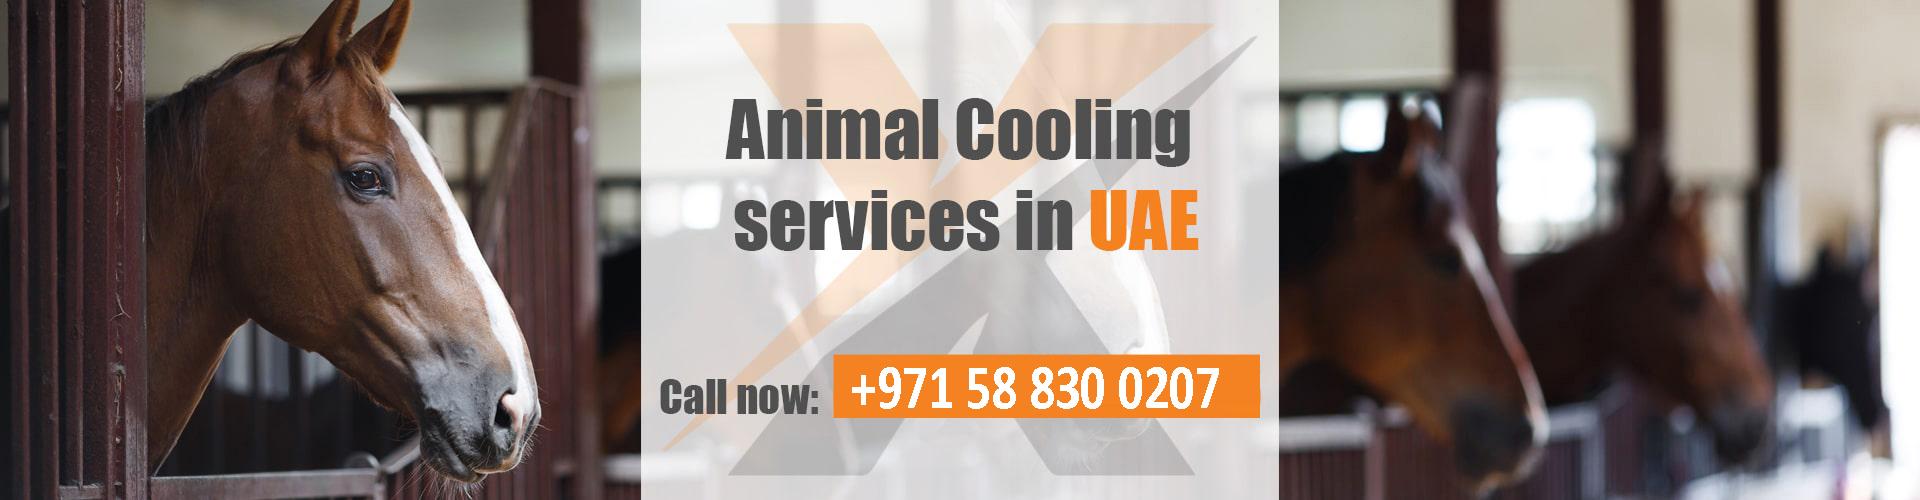 Animal Cooling